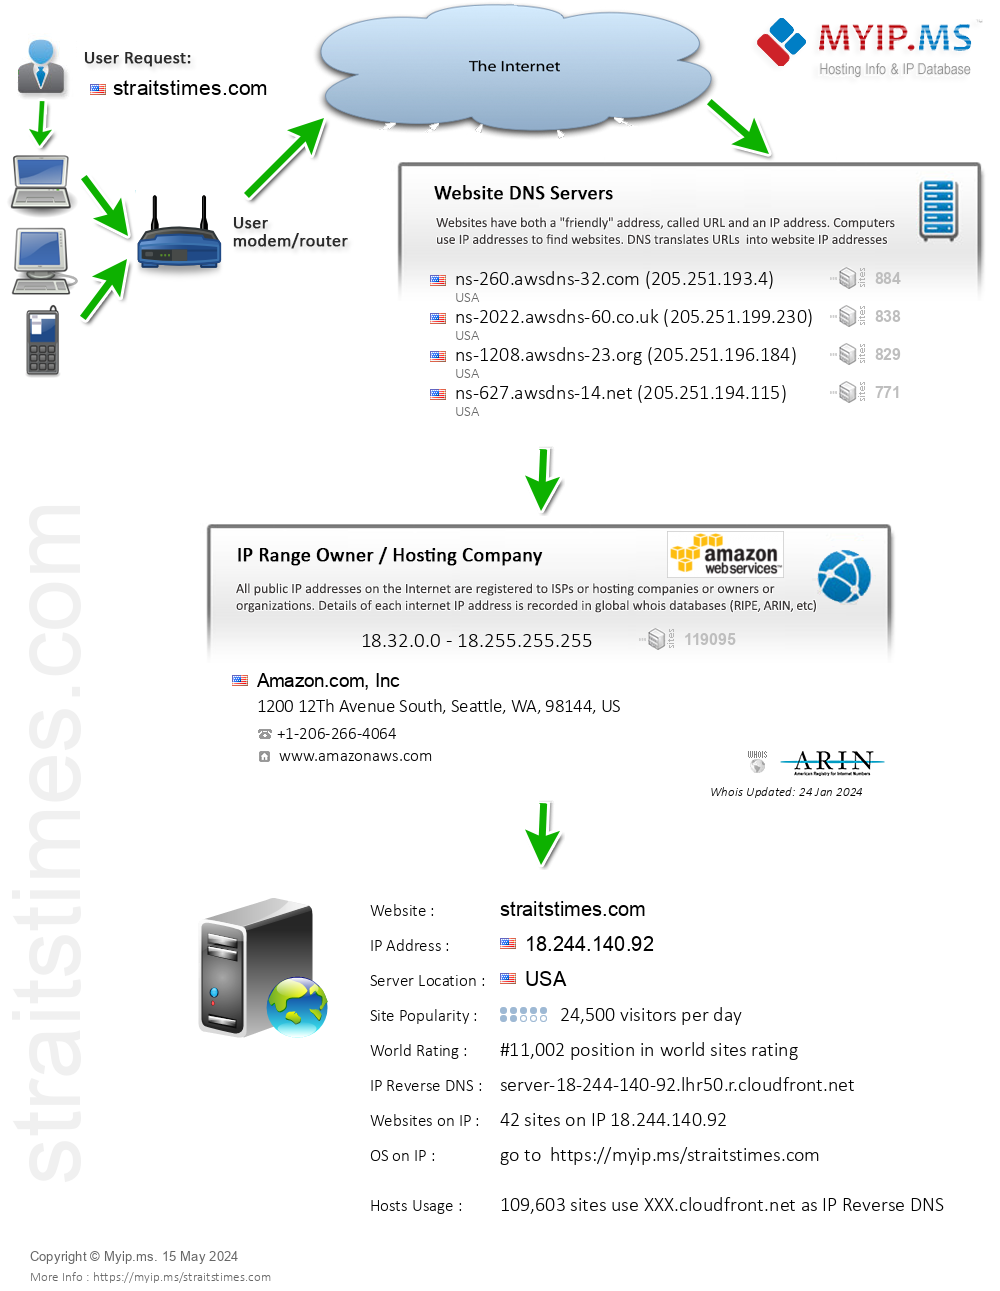 Straitstimes.com - Website Hosting Visual IP Diagram